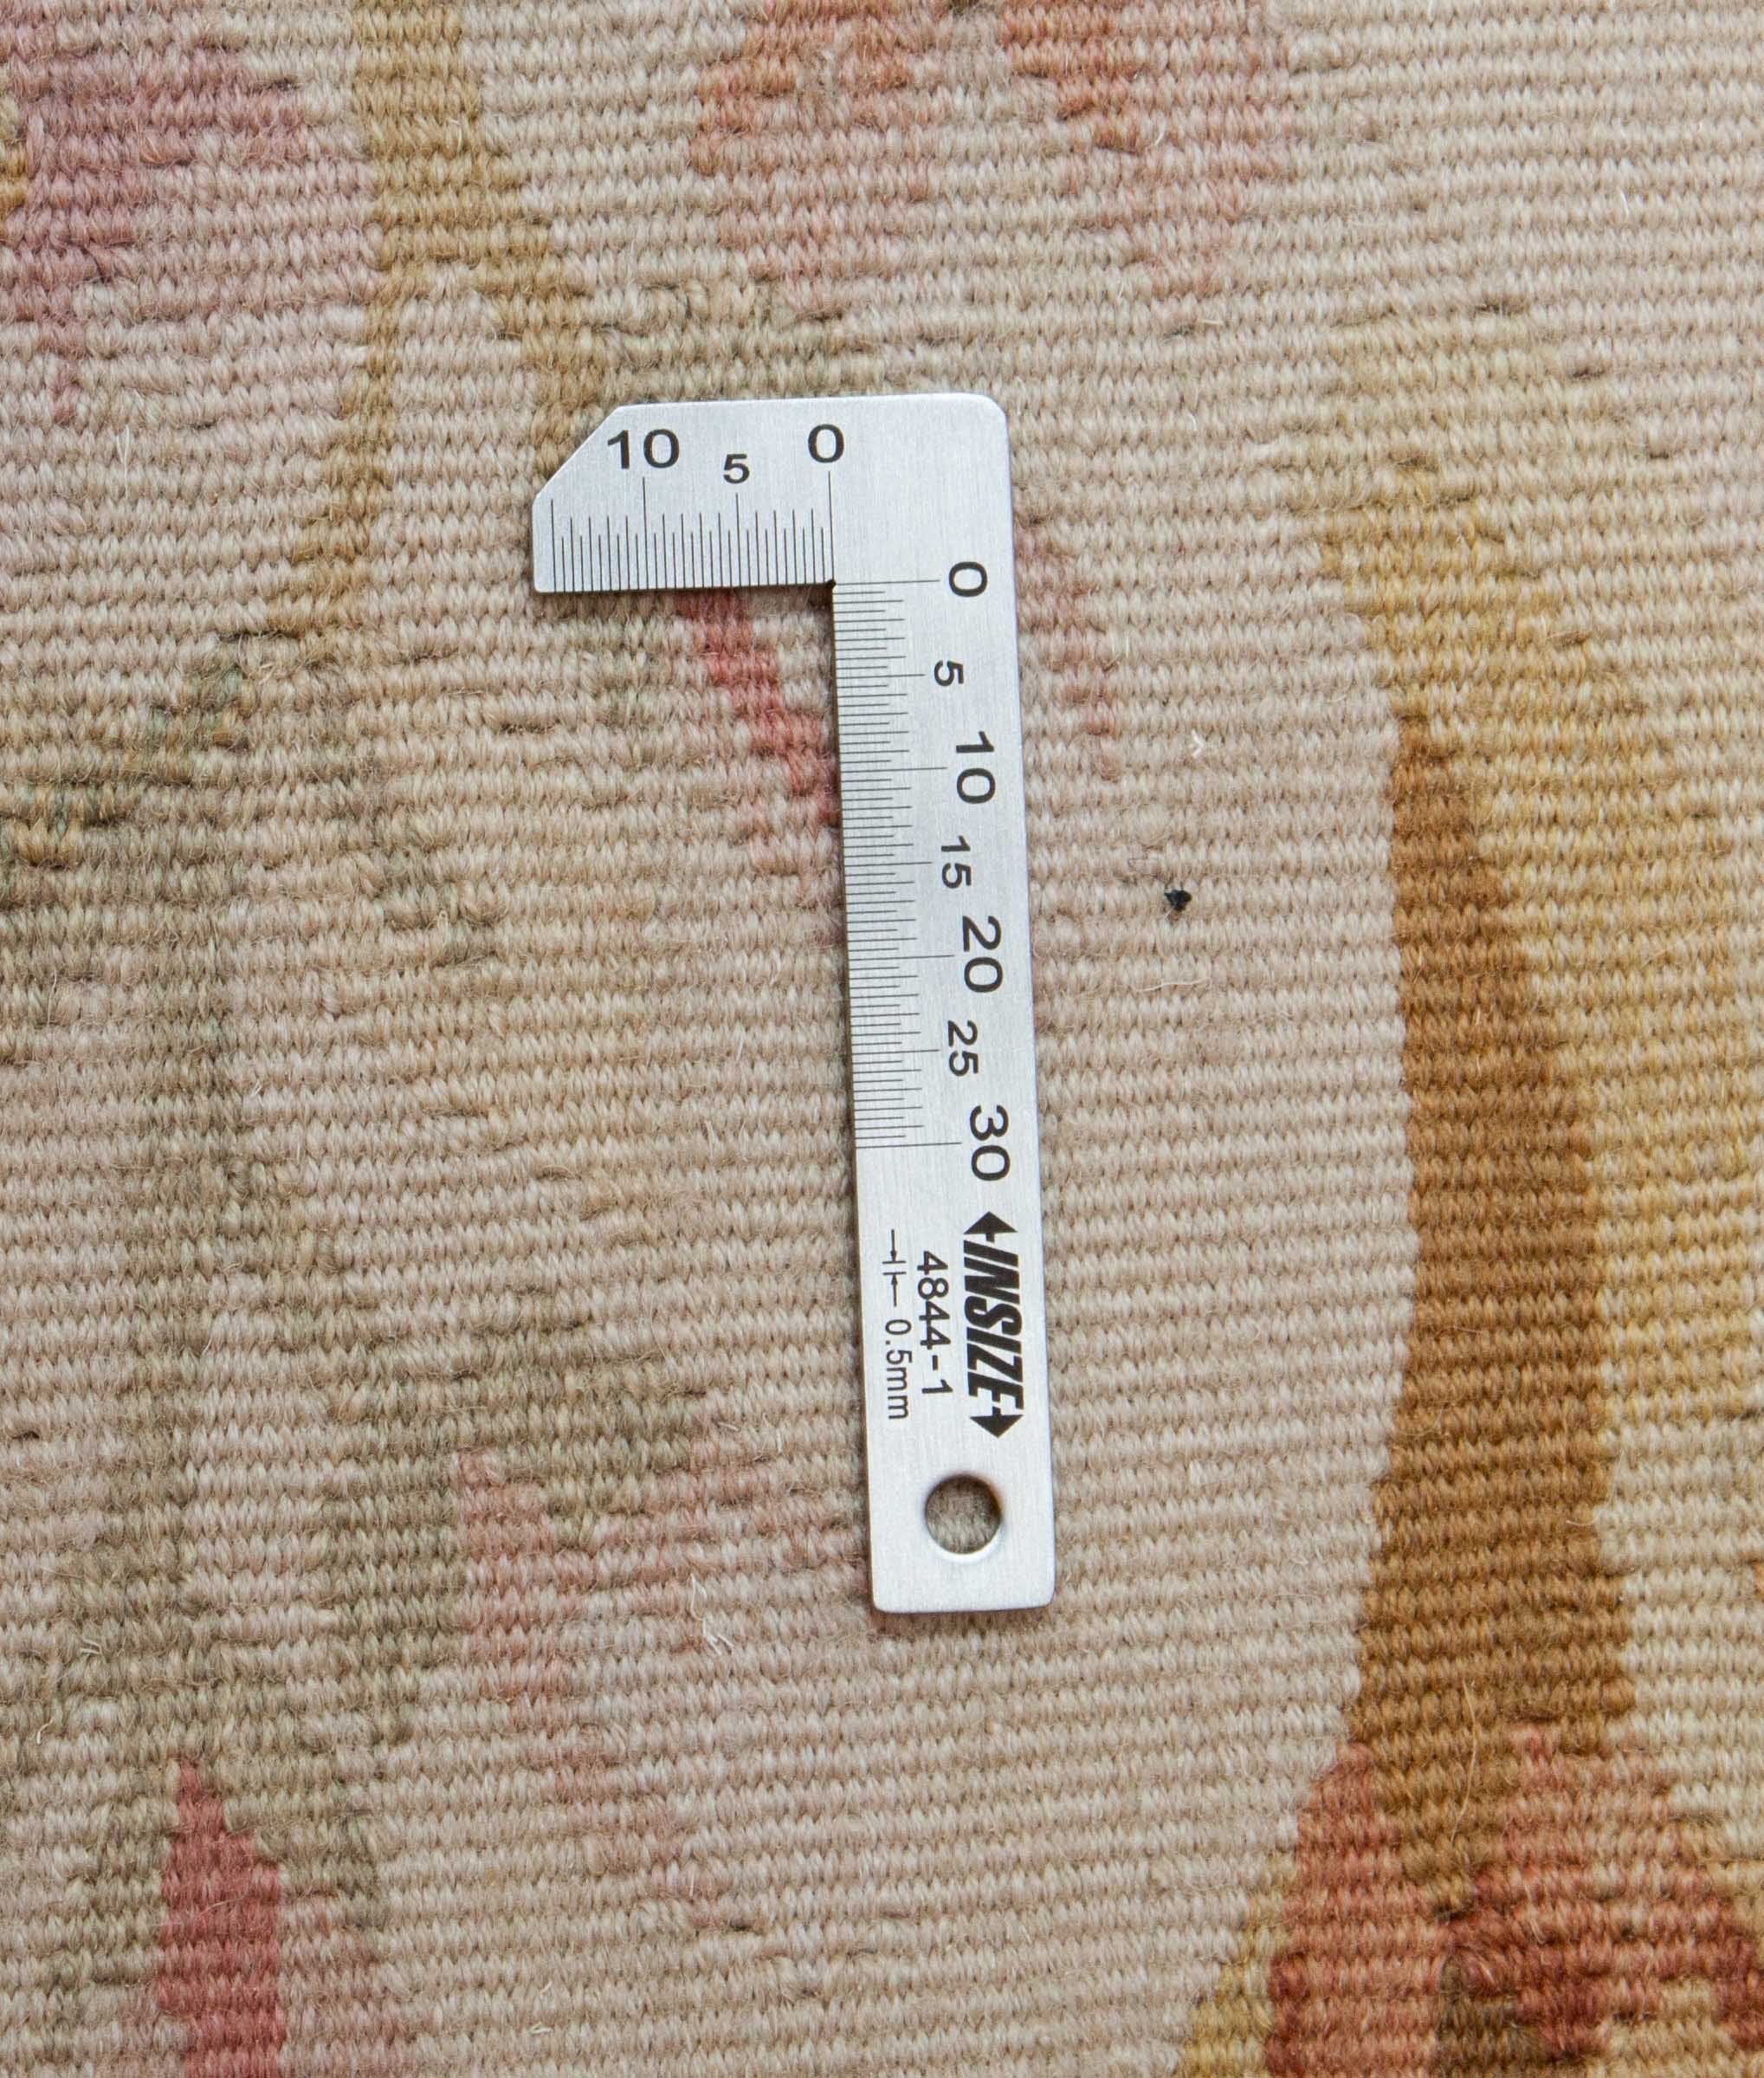 Eine Fotoaufnahme eines Aubusson Teppichs.